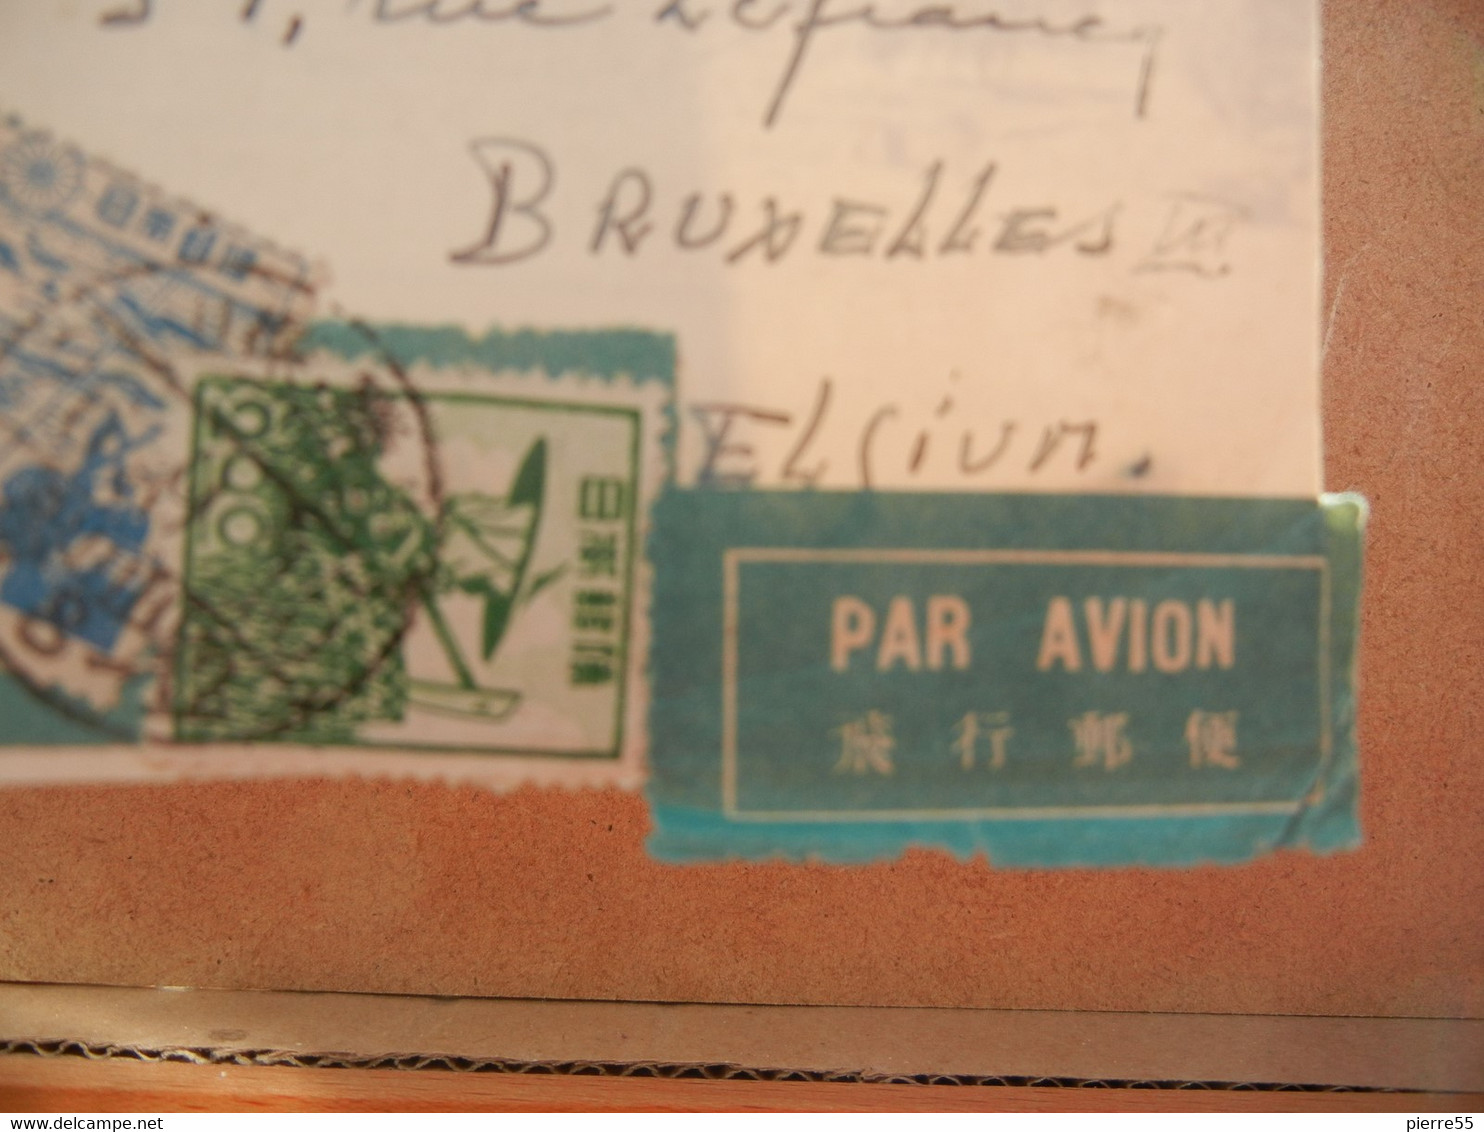 CPA JAPON - VIEW FROM THE SECOND FLOOR FUJI-VIEW HOTEL - 5 Timbres 3oblit Japon + Oblit Bruxelles 1951 + "par Avion" - Briefe U. Dokumente